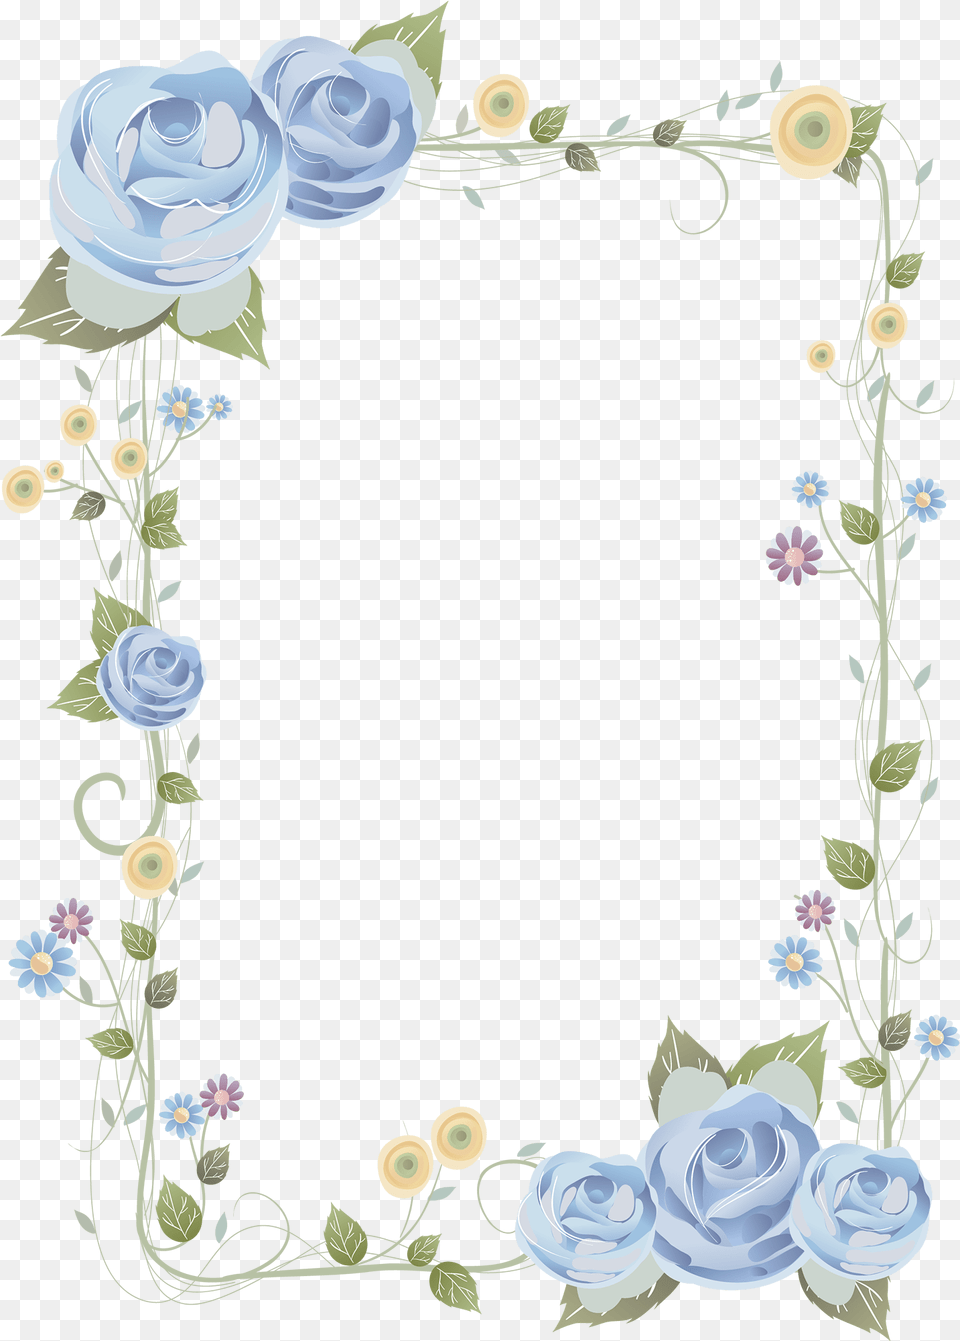 Blue Rose Frame Background Frame Flower Hd Frame Border Flower Backgrounds, Art, Floral Design, Graphics, Pattern Free Transparent Png